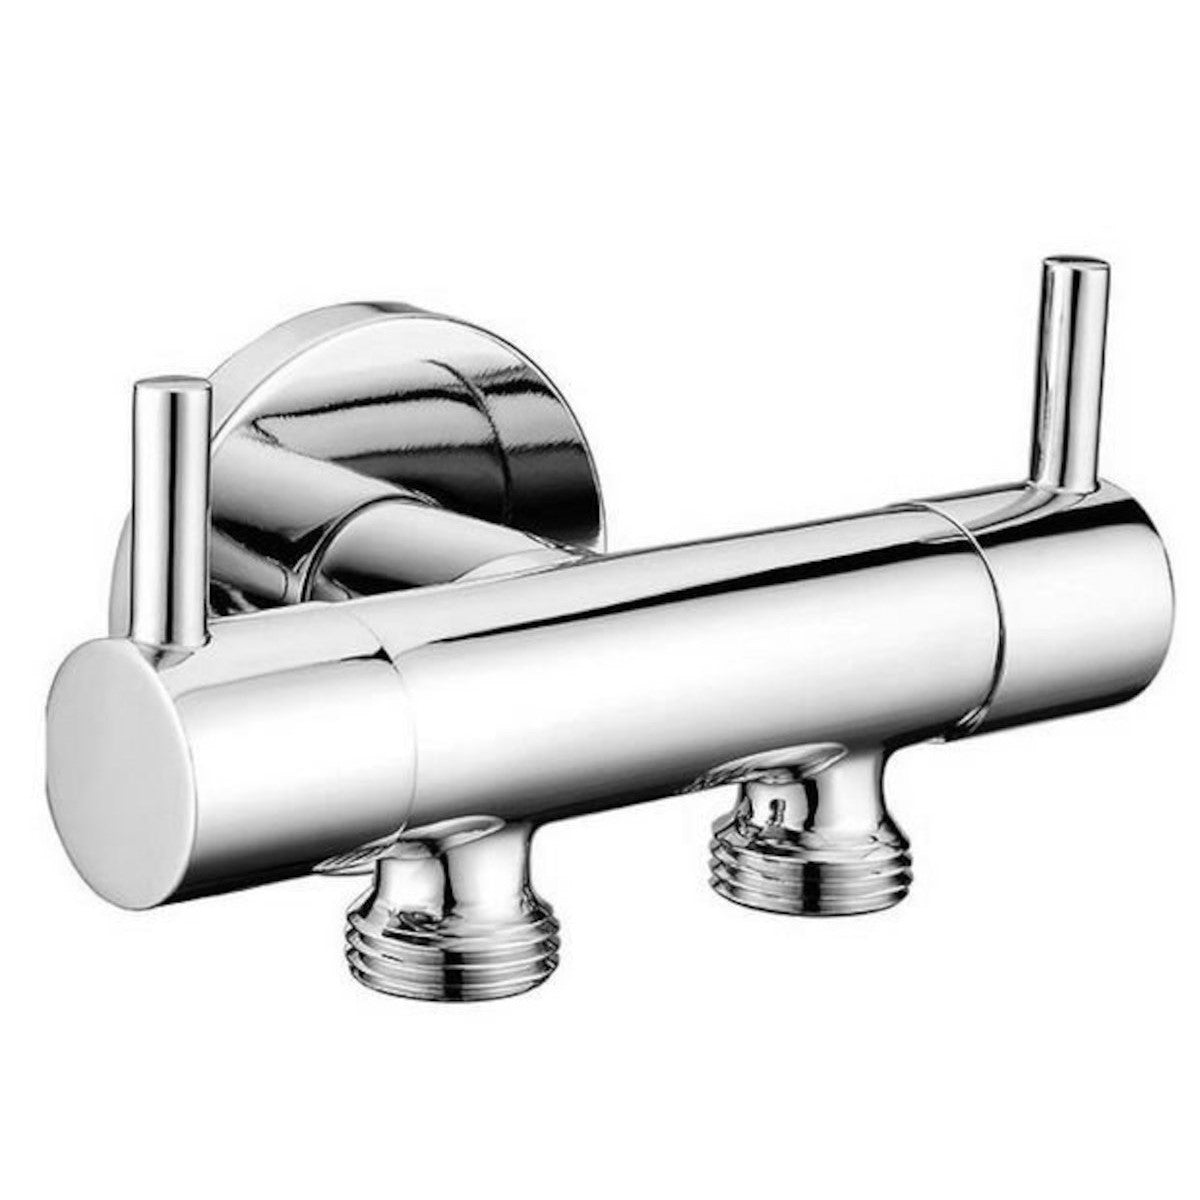 Ventil 1209-04-B SAT dvojni kotni ventil za priklop WC školjke ter higijenskega tuš seta | KOPALNICA-ONLINE.SI